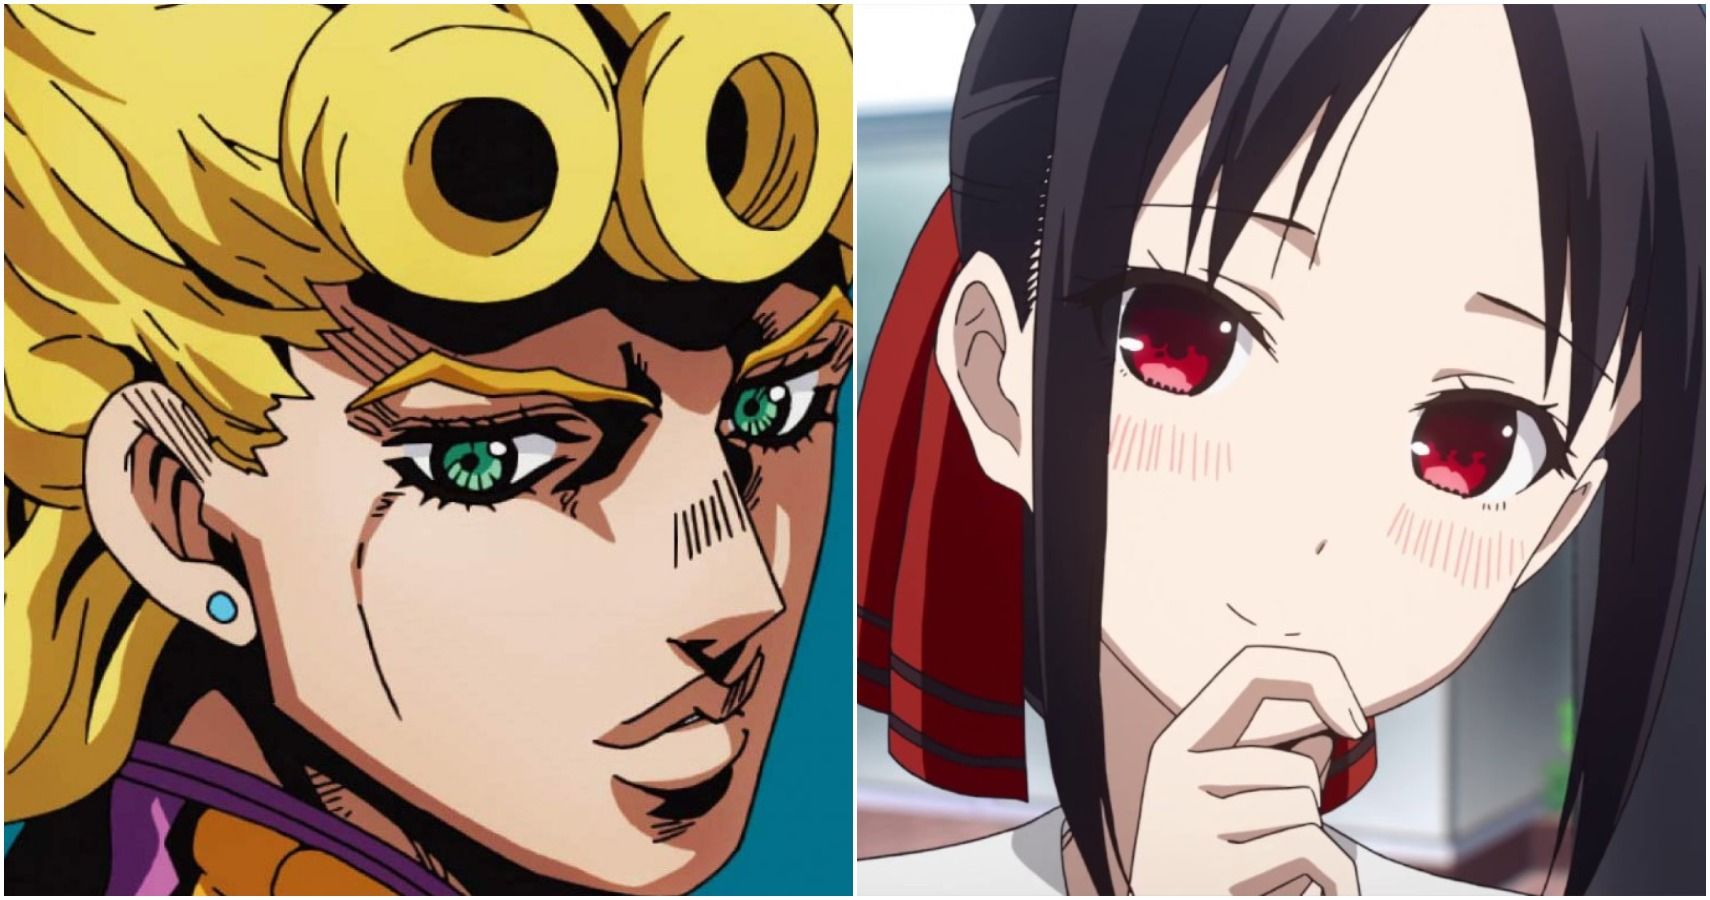 JoJo: 10 JoJo References In Anime Most Fans Missed | CBR